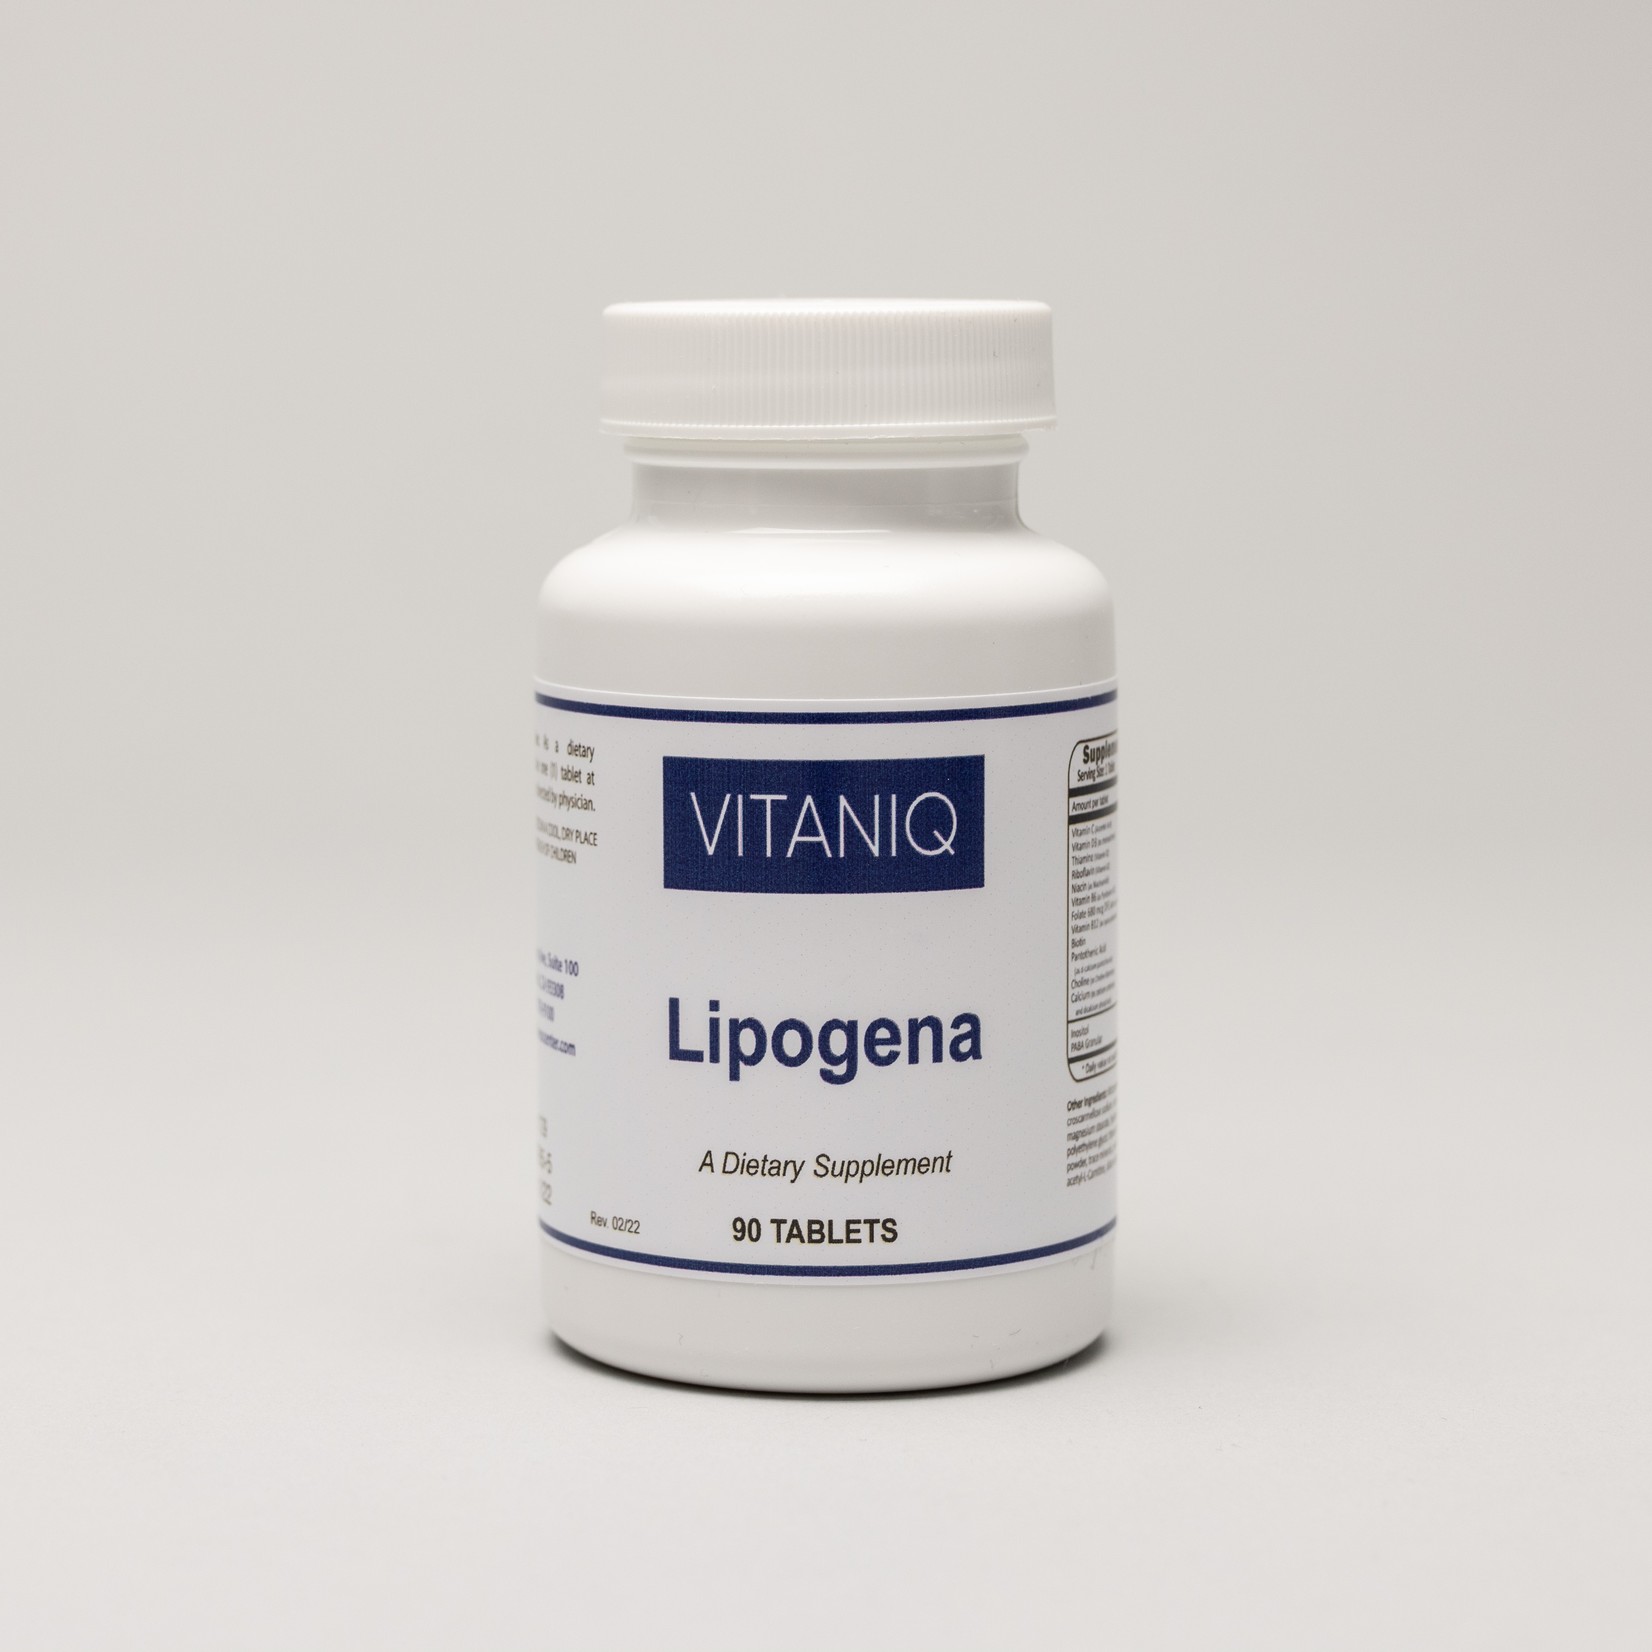 Lipogena